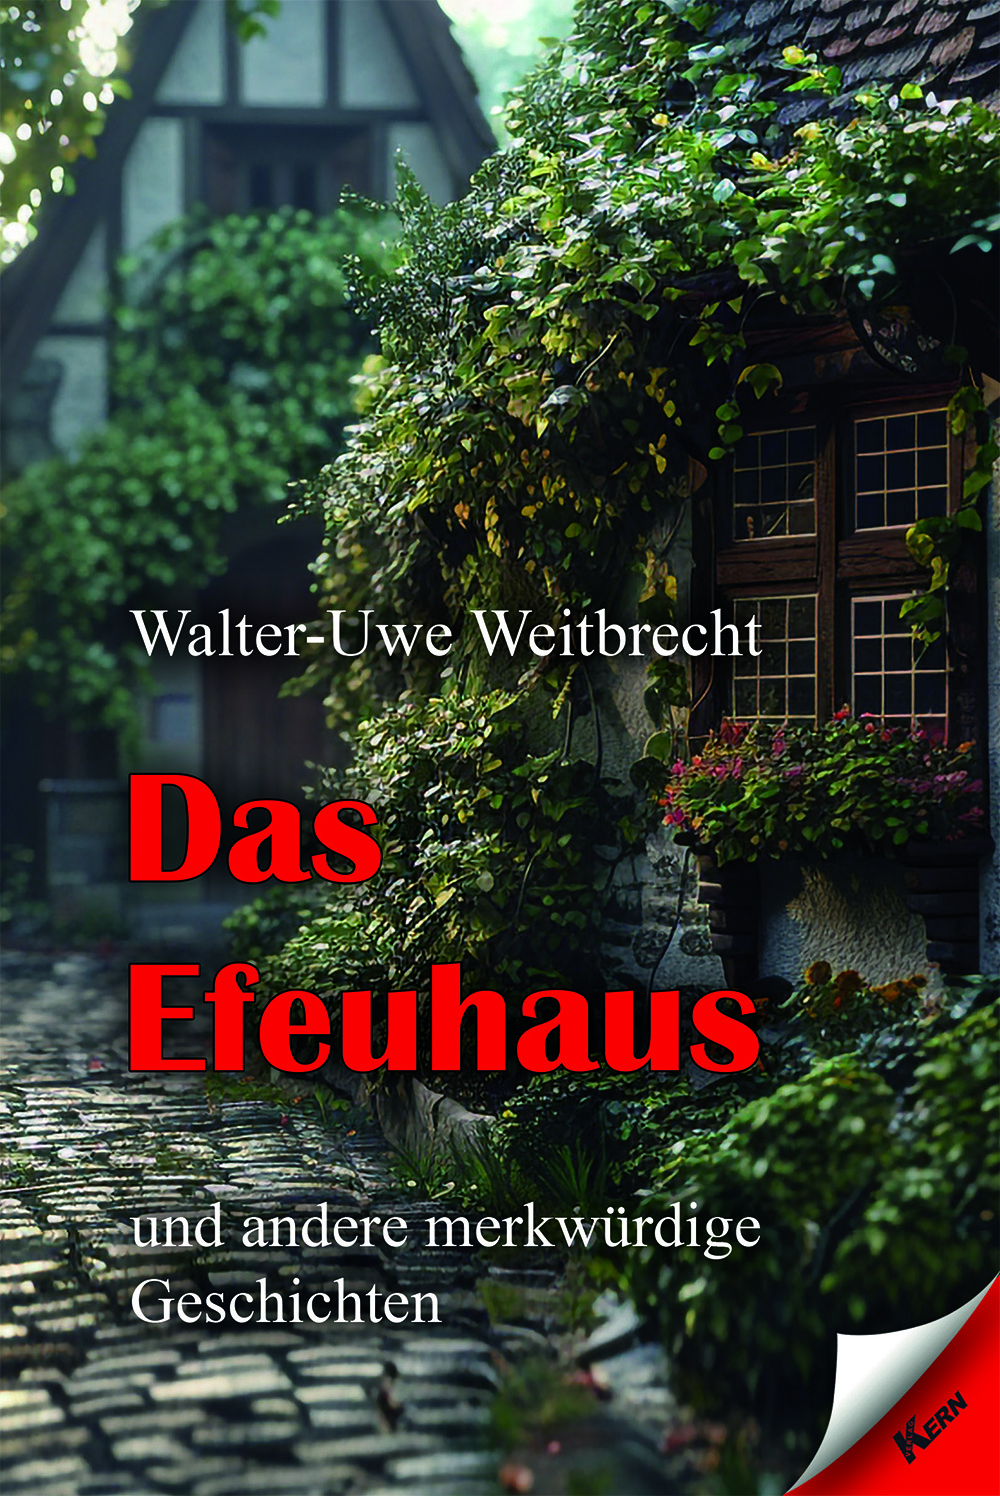 Vorschau: Das Efeuhaus – Am 22. Juli erscheint ein weiterer Band mit Kurzgeschichten und Gedichten